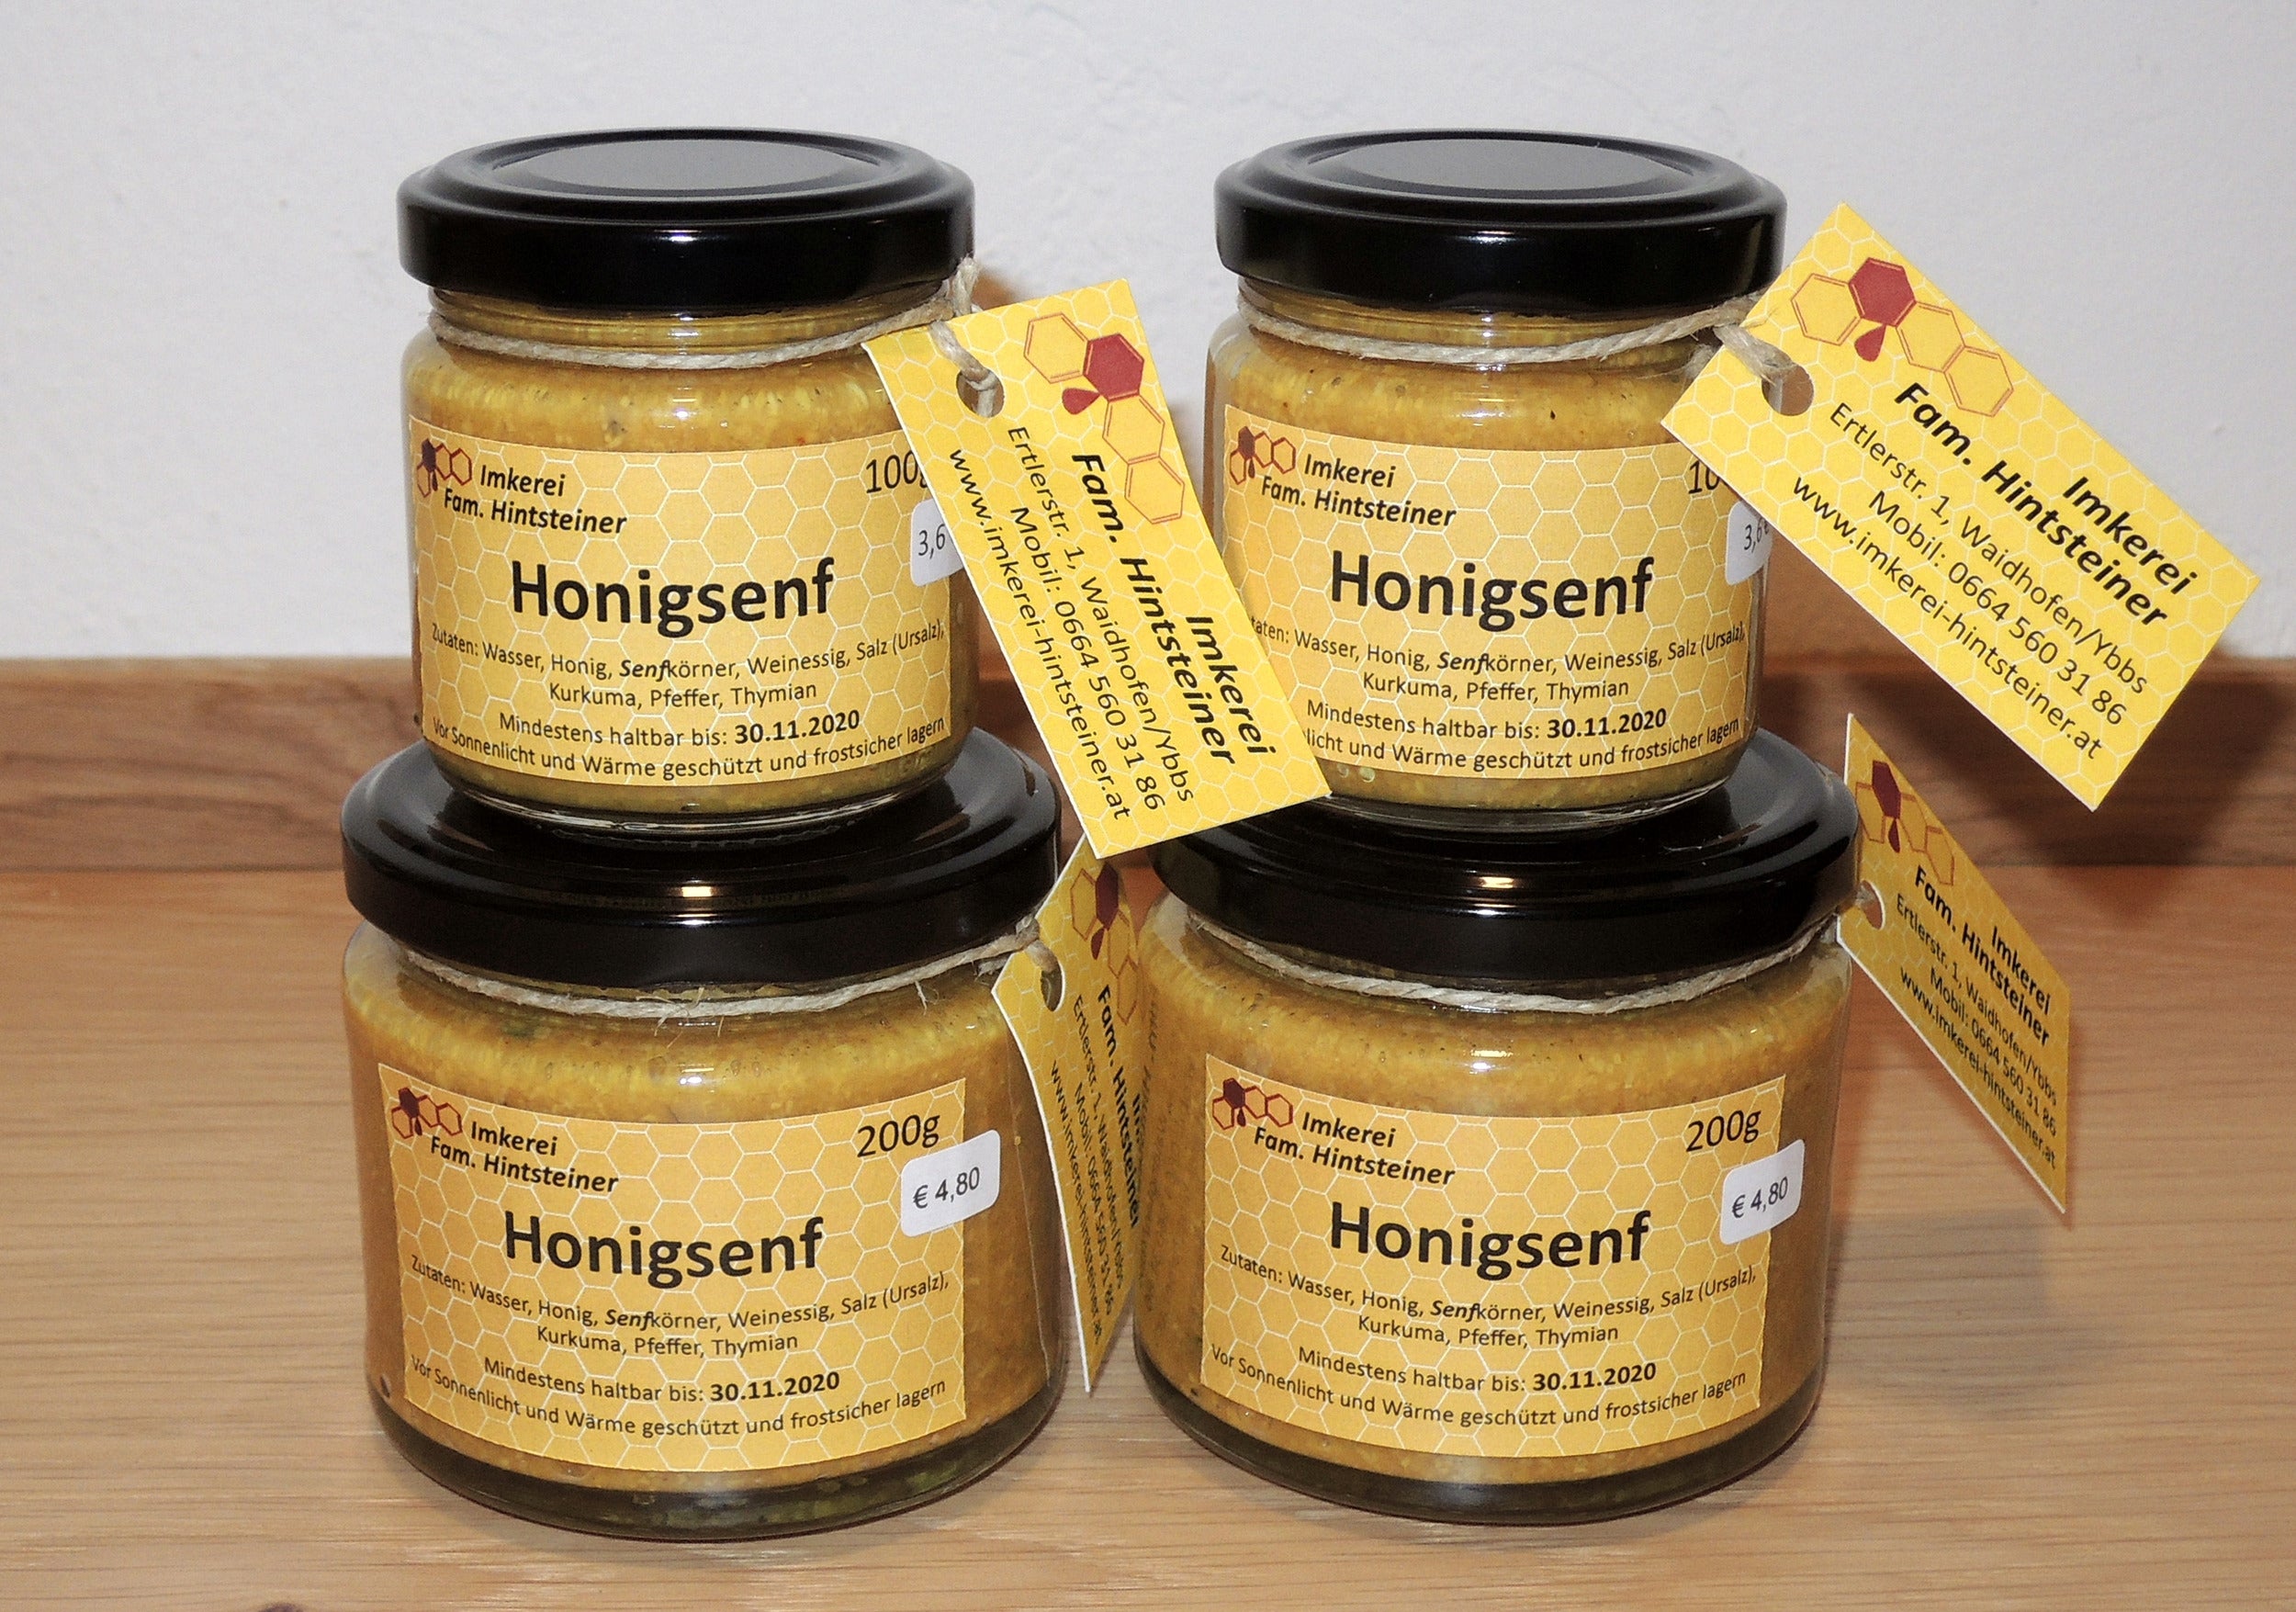 Honigsenf - Produkte | Imkerei Hintsteiner